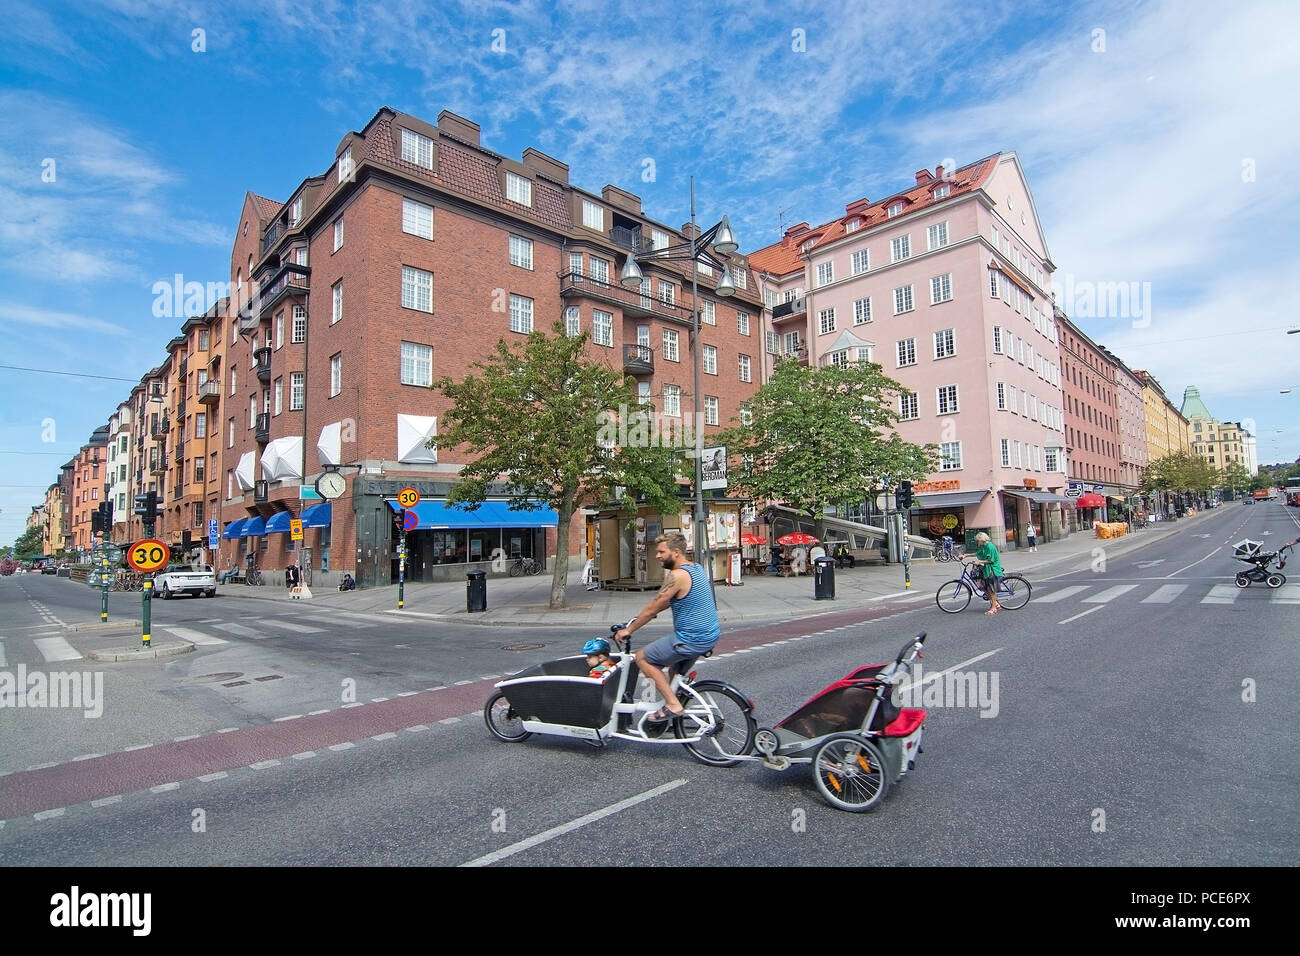 STOCKHOLM, Schweden - 11. JULI 2018: Radfahrer mit Kind wagen Kreuze Sankt Eriksplan in Vasastan am 11. Juli 2018 in Stockholm, Schweden. Stockfoto